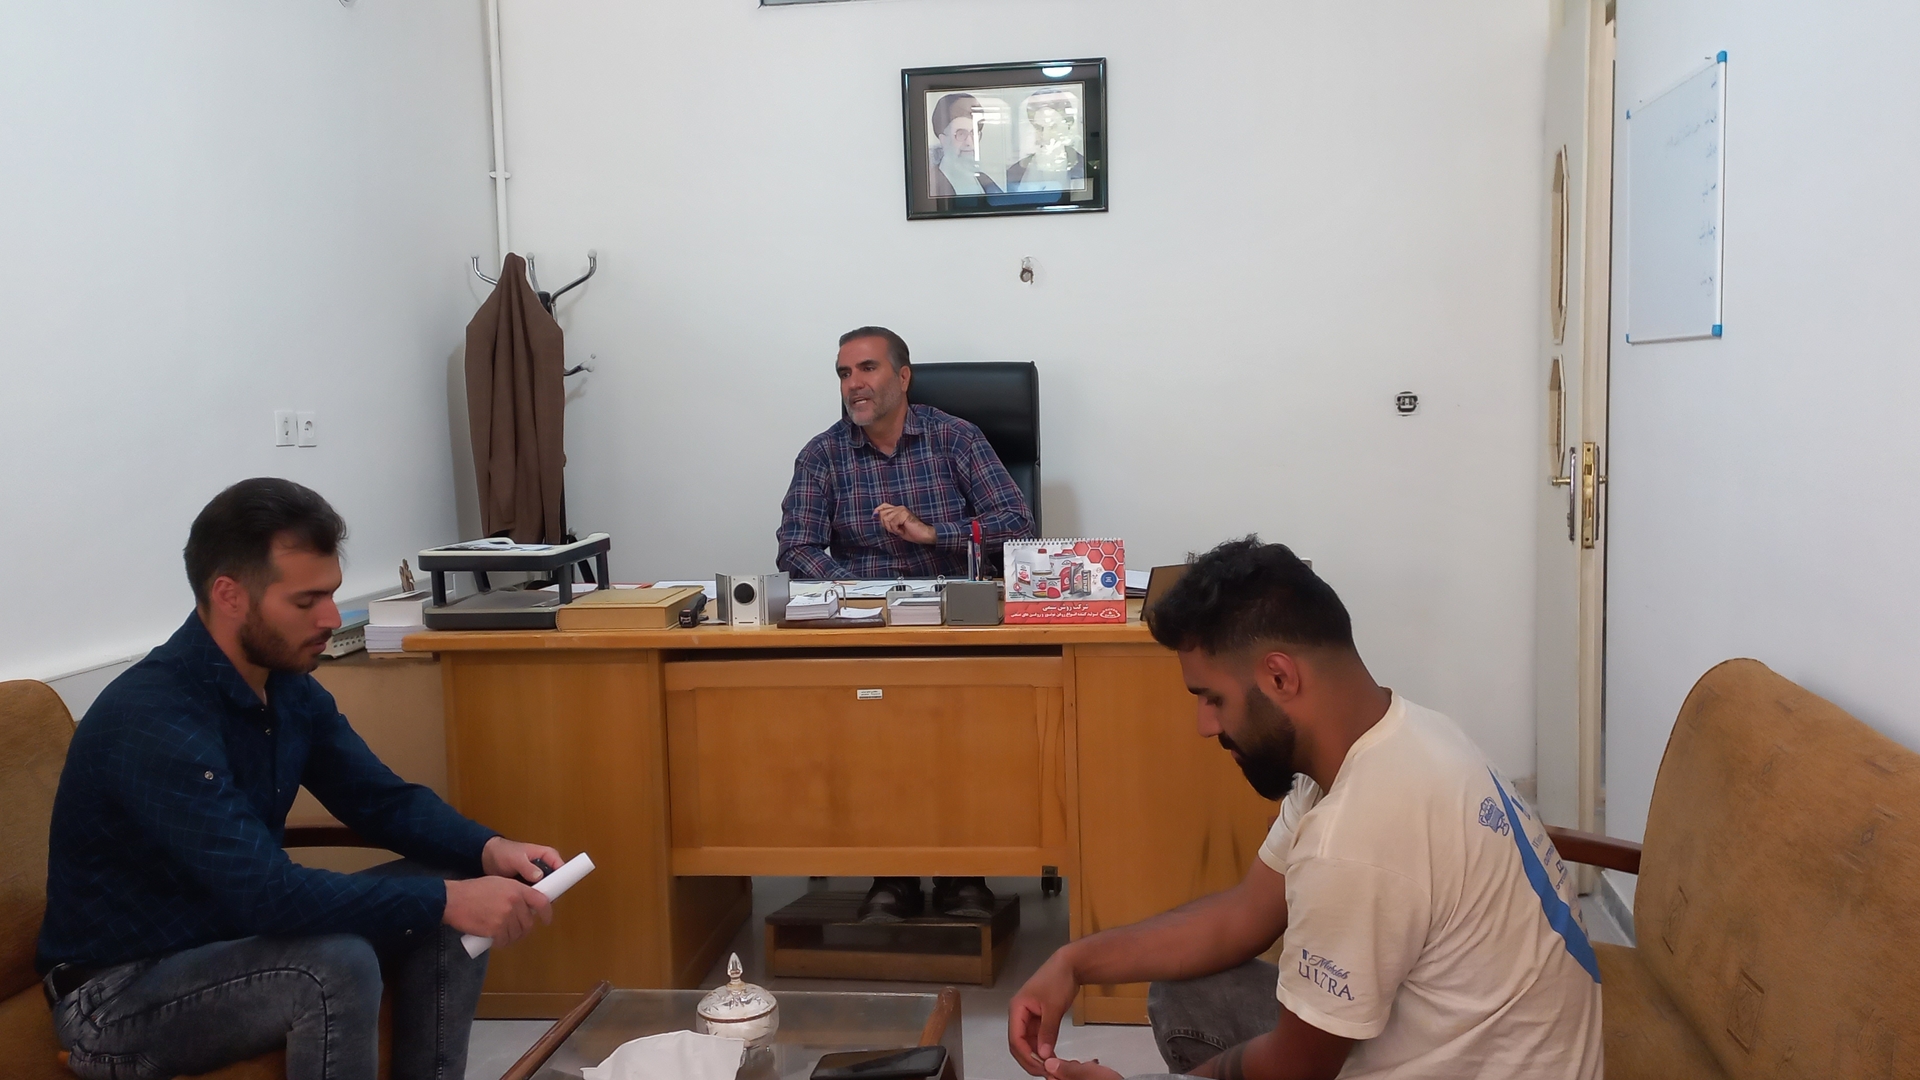 دیدار متصدیان نانوایی شهر زاویه با جناب آقای شالیان مقدم بخشدار زاویه و پیگیری مشکلات مربوط به این صنف.